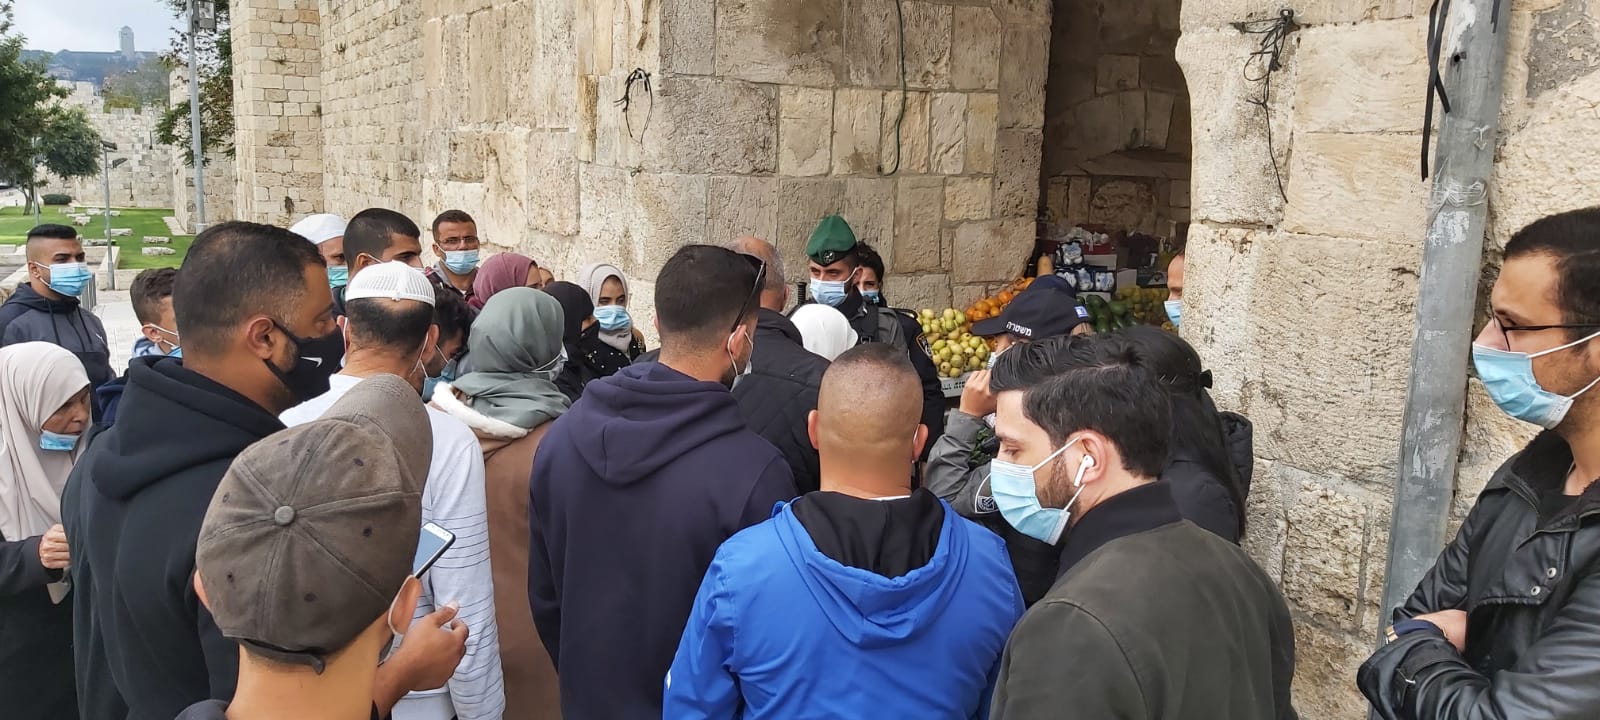 حواجز الاحتلال في القدس تعرقل وصول المصلين للأقصى